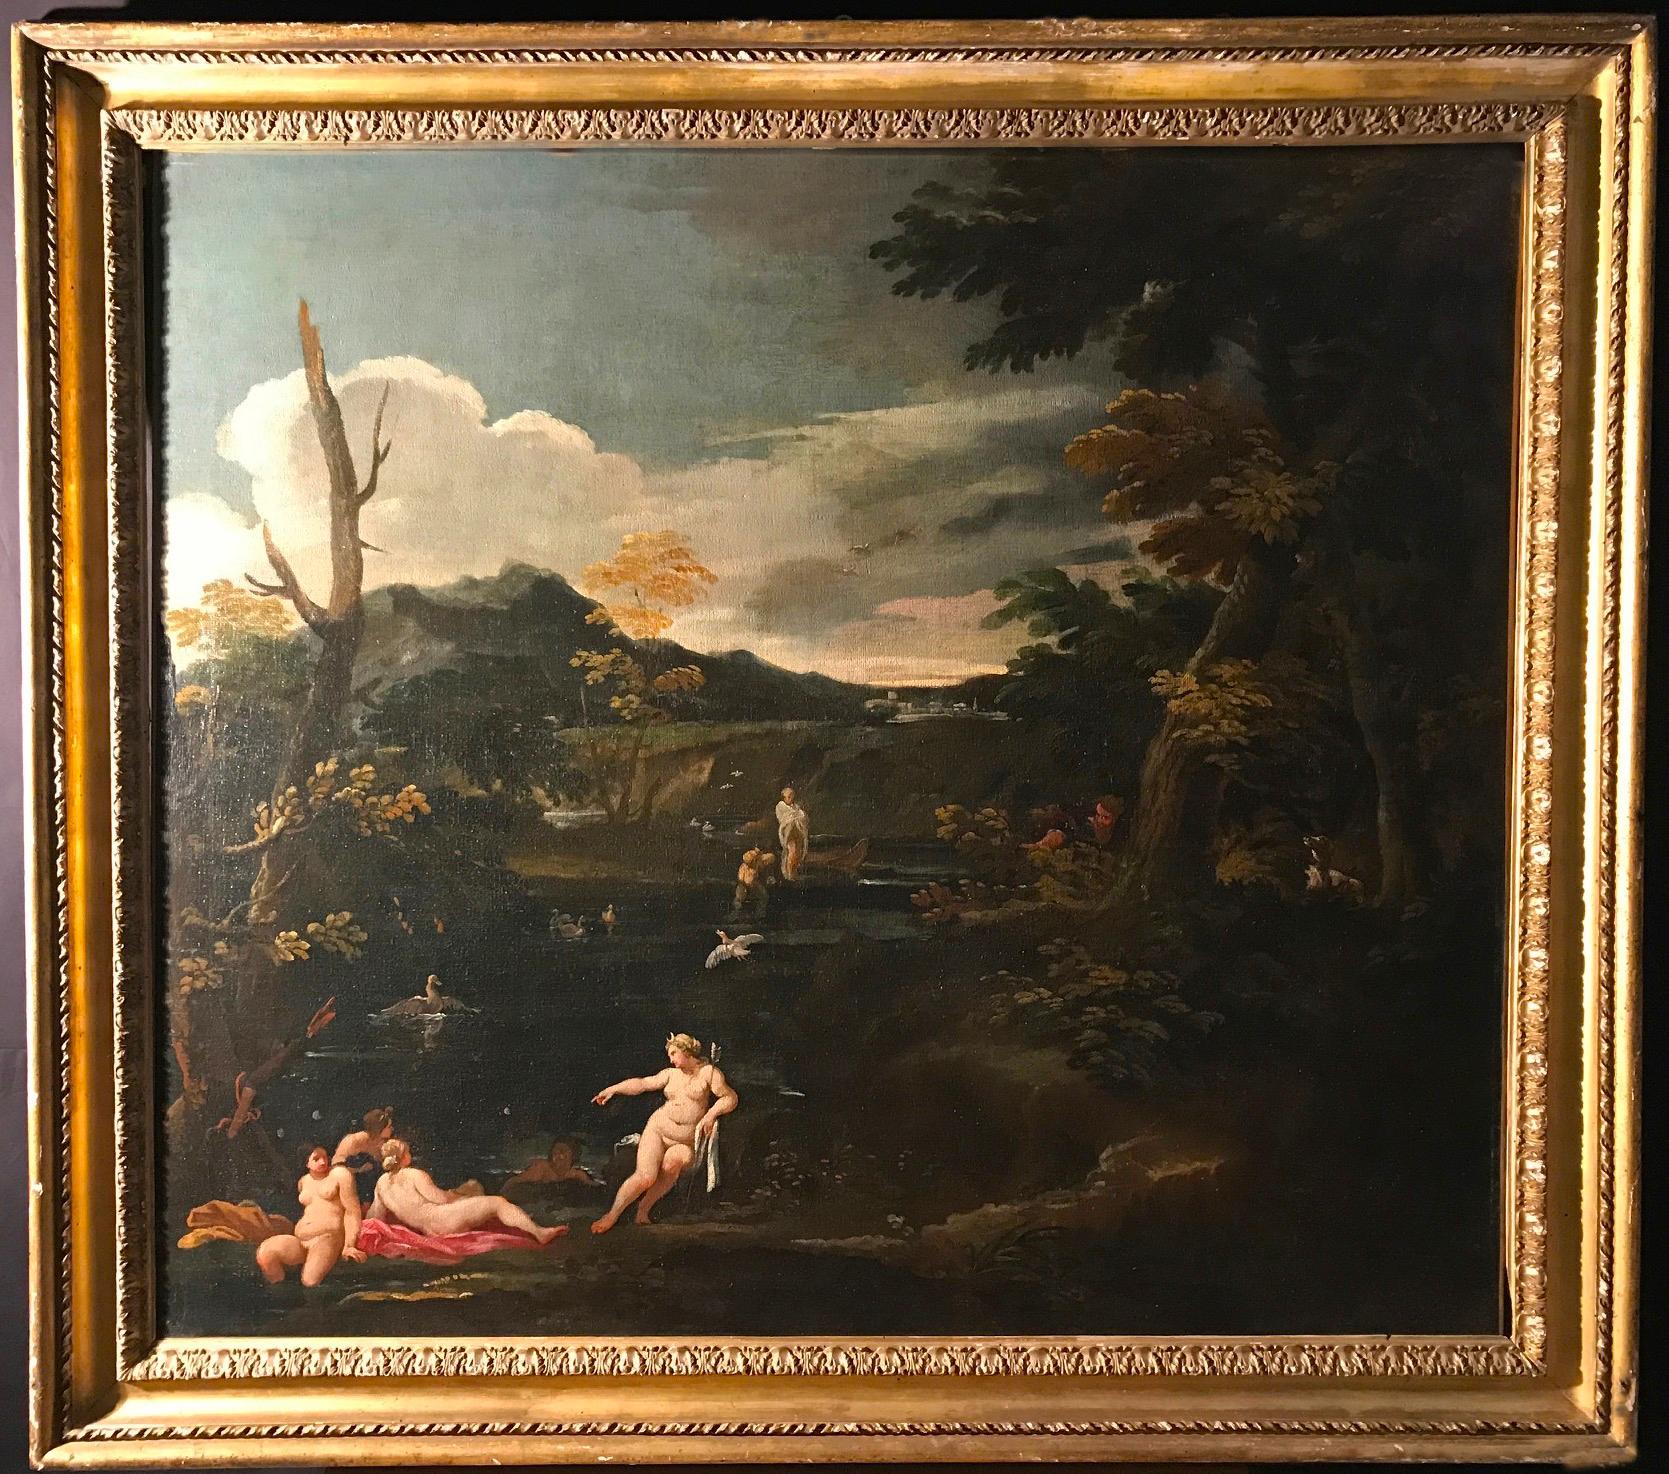 Importante peinture mythologique du XVIIe siècle Diane et actrice, huile sur toile 